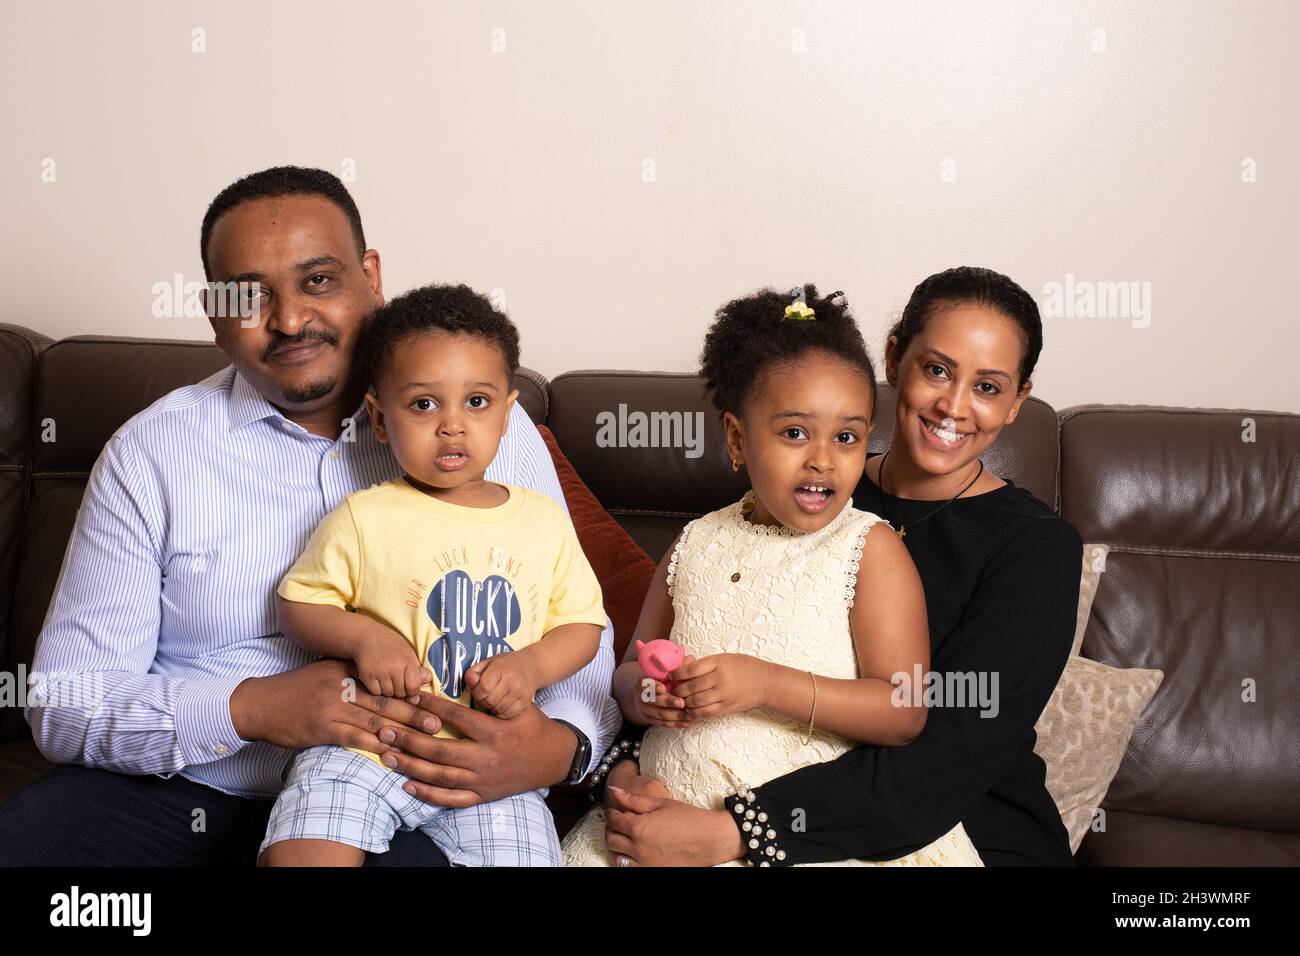 Famille à la maison, assis sur un canapé, fille de 5 ans, frère de 2 ans, mère et père, tous regardant la caméra Banque D'Images